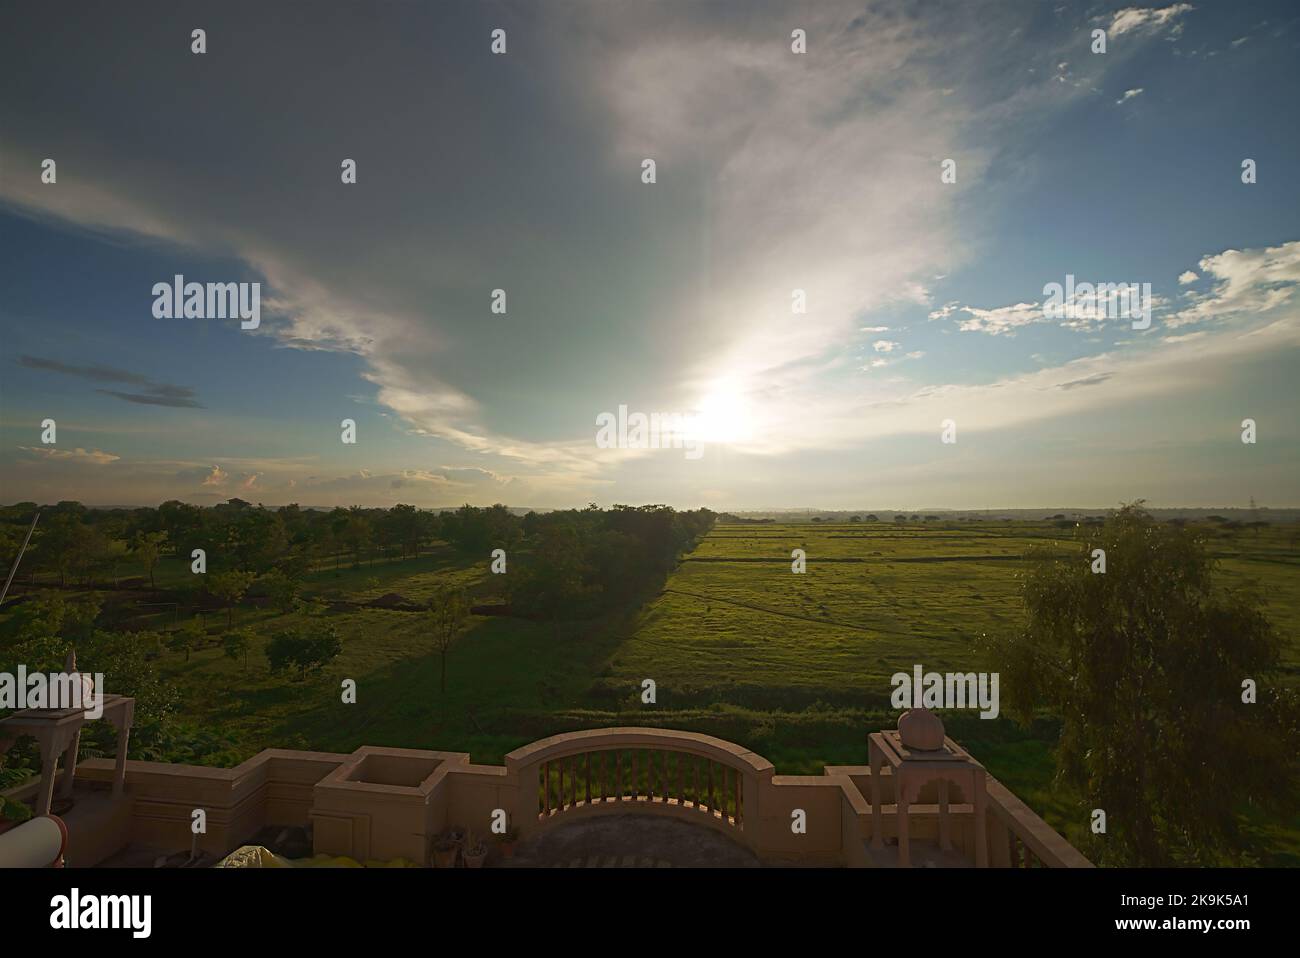 Espectacular paisaje escénico fondo protector de pantalla nubes campos verdes amplios espacios abiertos plantaciones forestales al aire libre la India rural Foto de stock